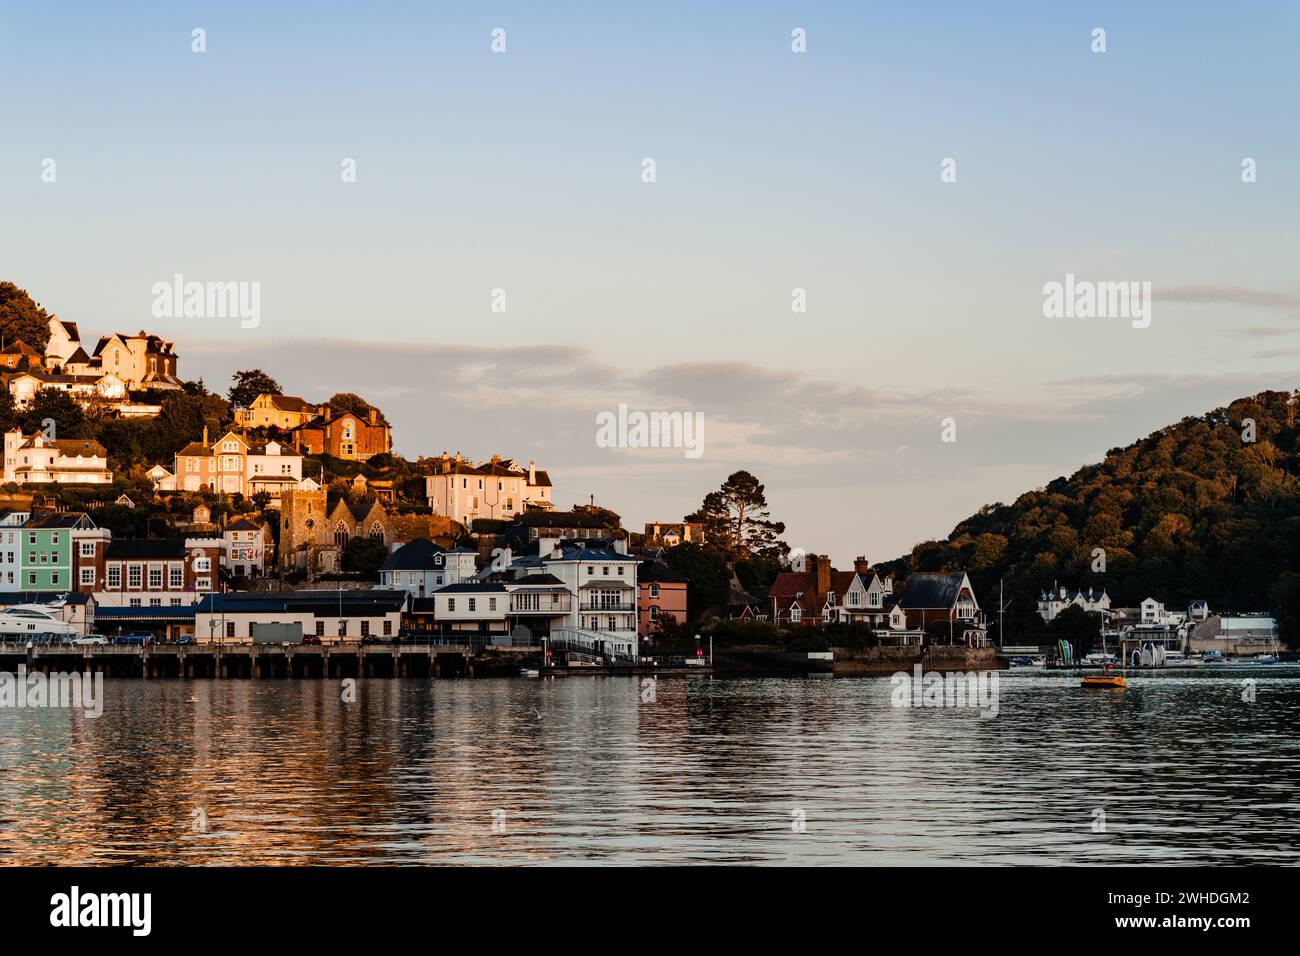 Atmosfera serale nella baia della città portuale di Dartmouth, vista delle case della città riflesse nell'acqua Foto Stock